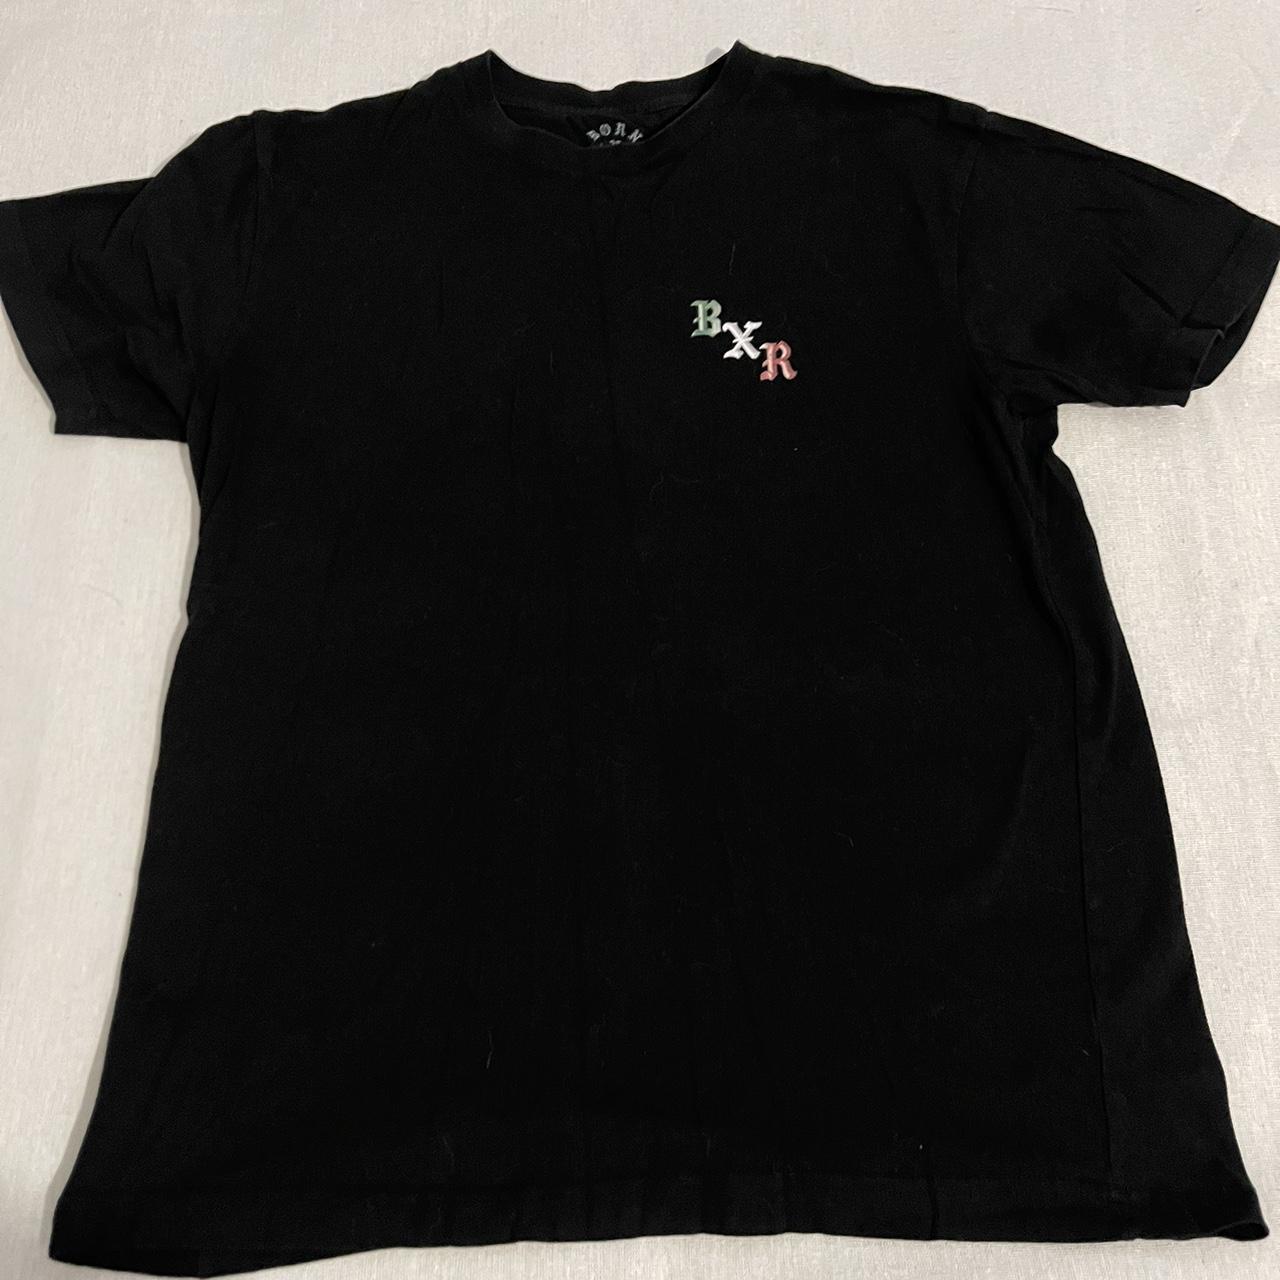 Born x Raised Men's Black T-shirt (2)